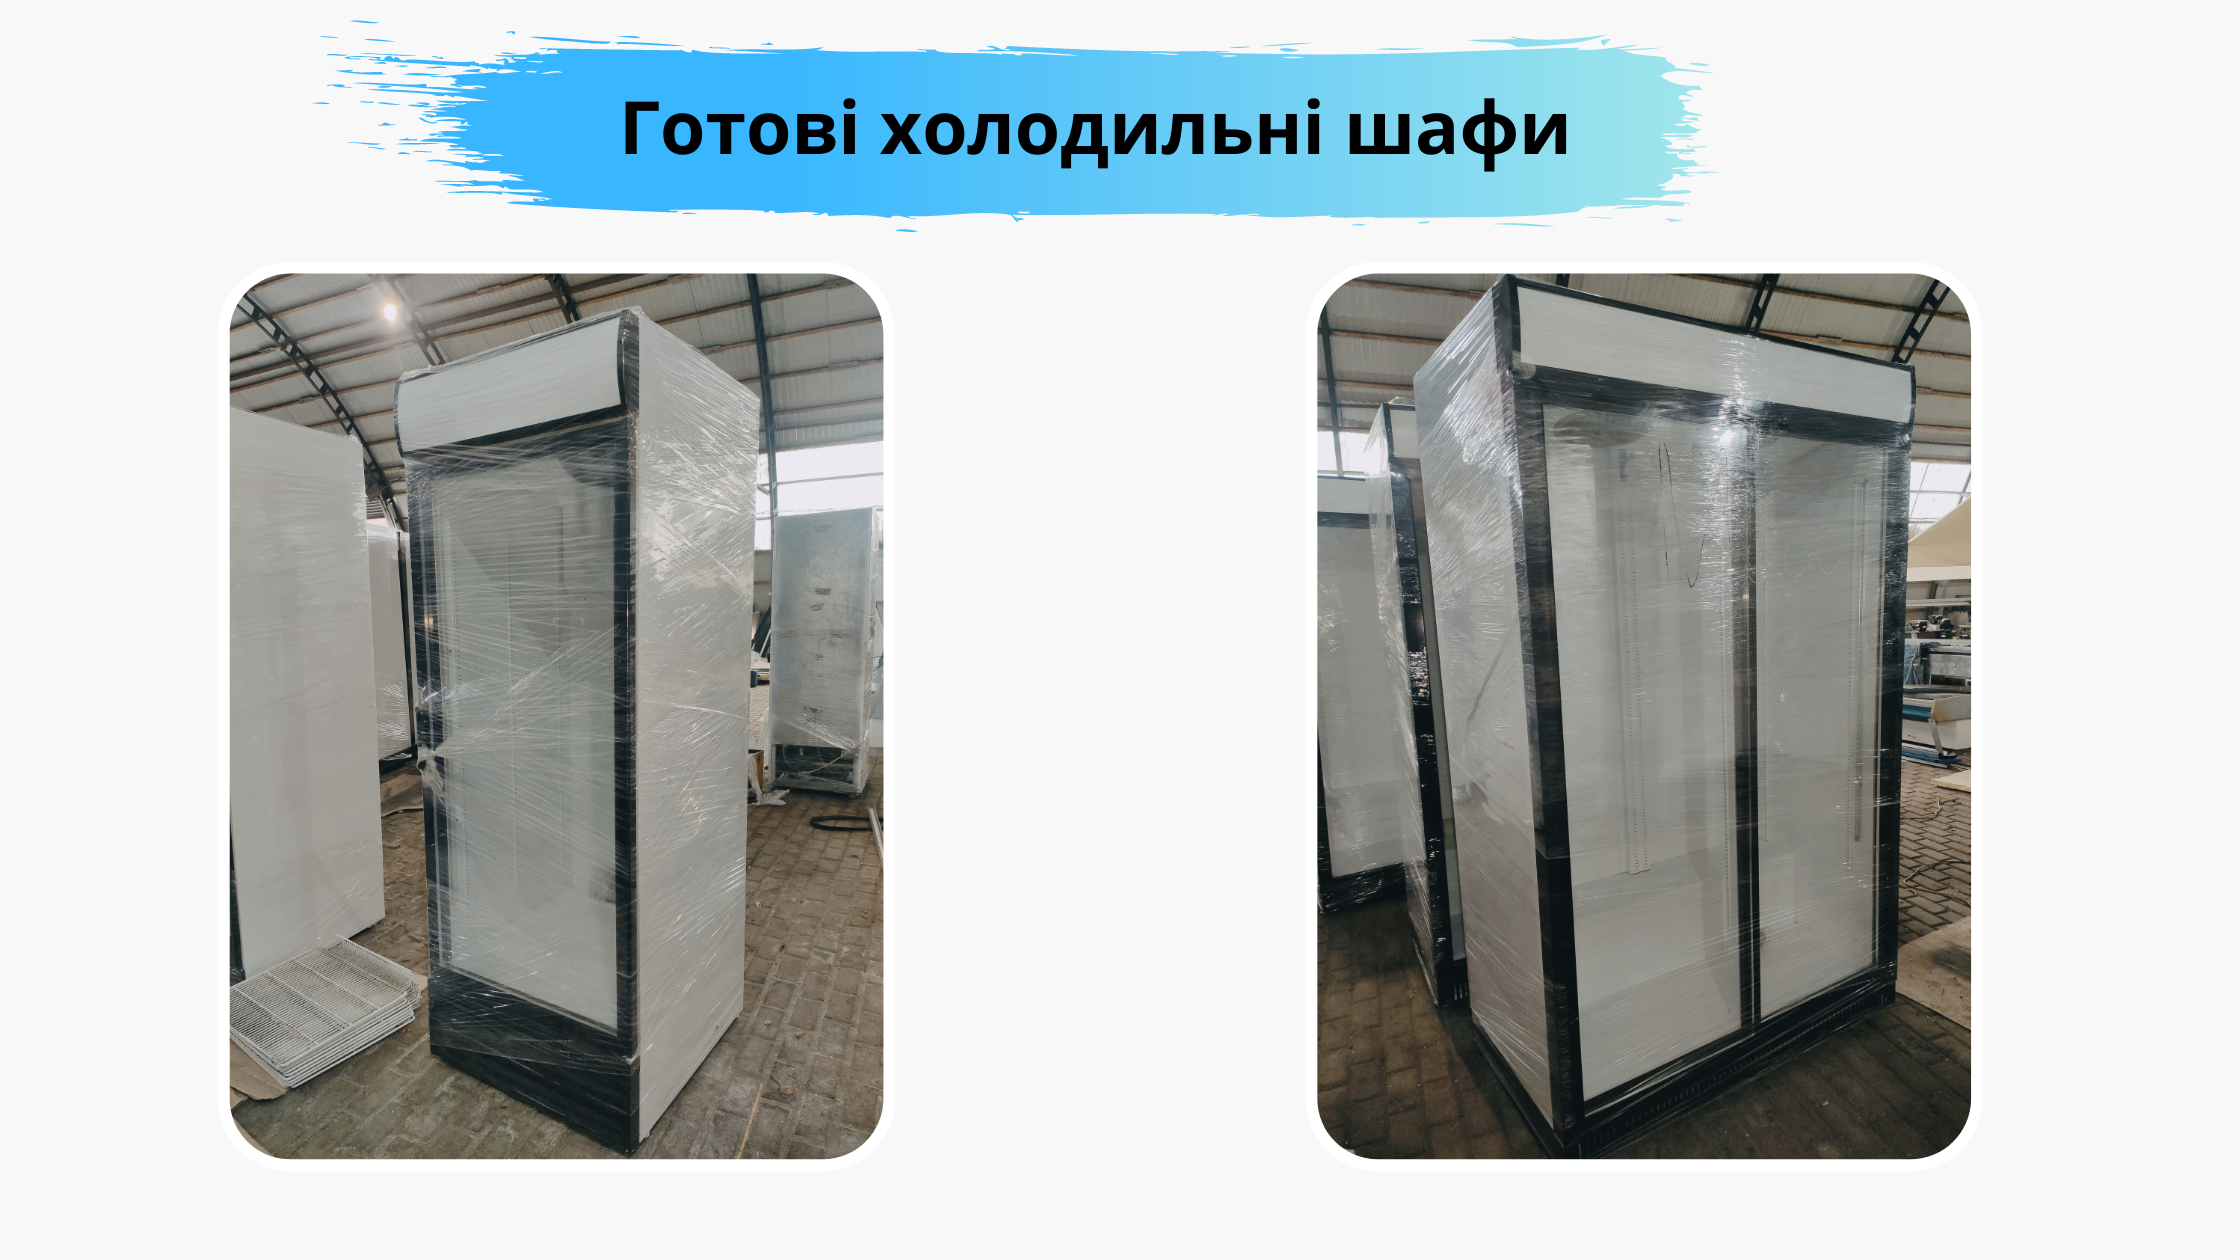 Відновлені холодильні шафи ProdHolod Plus